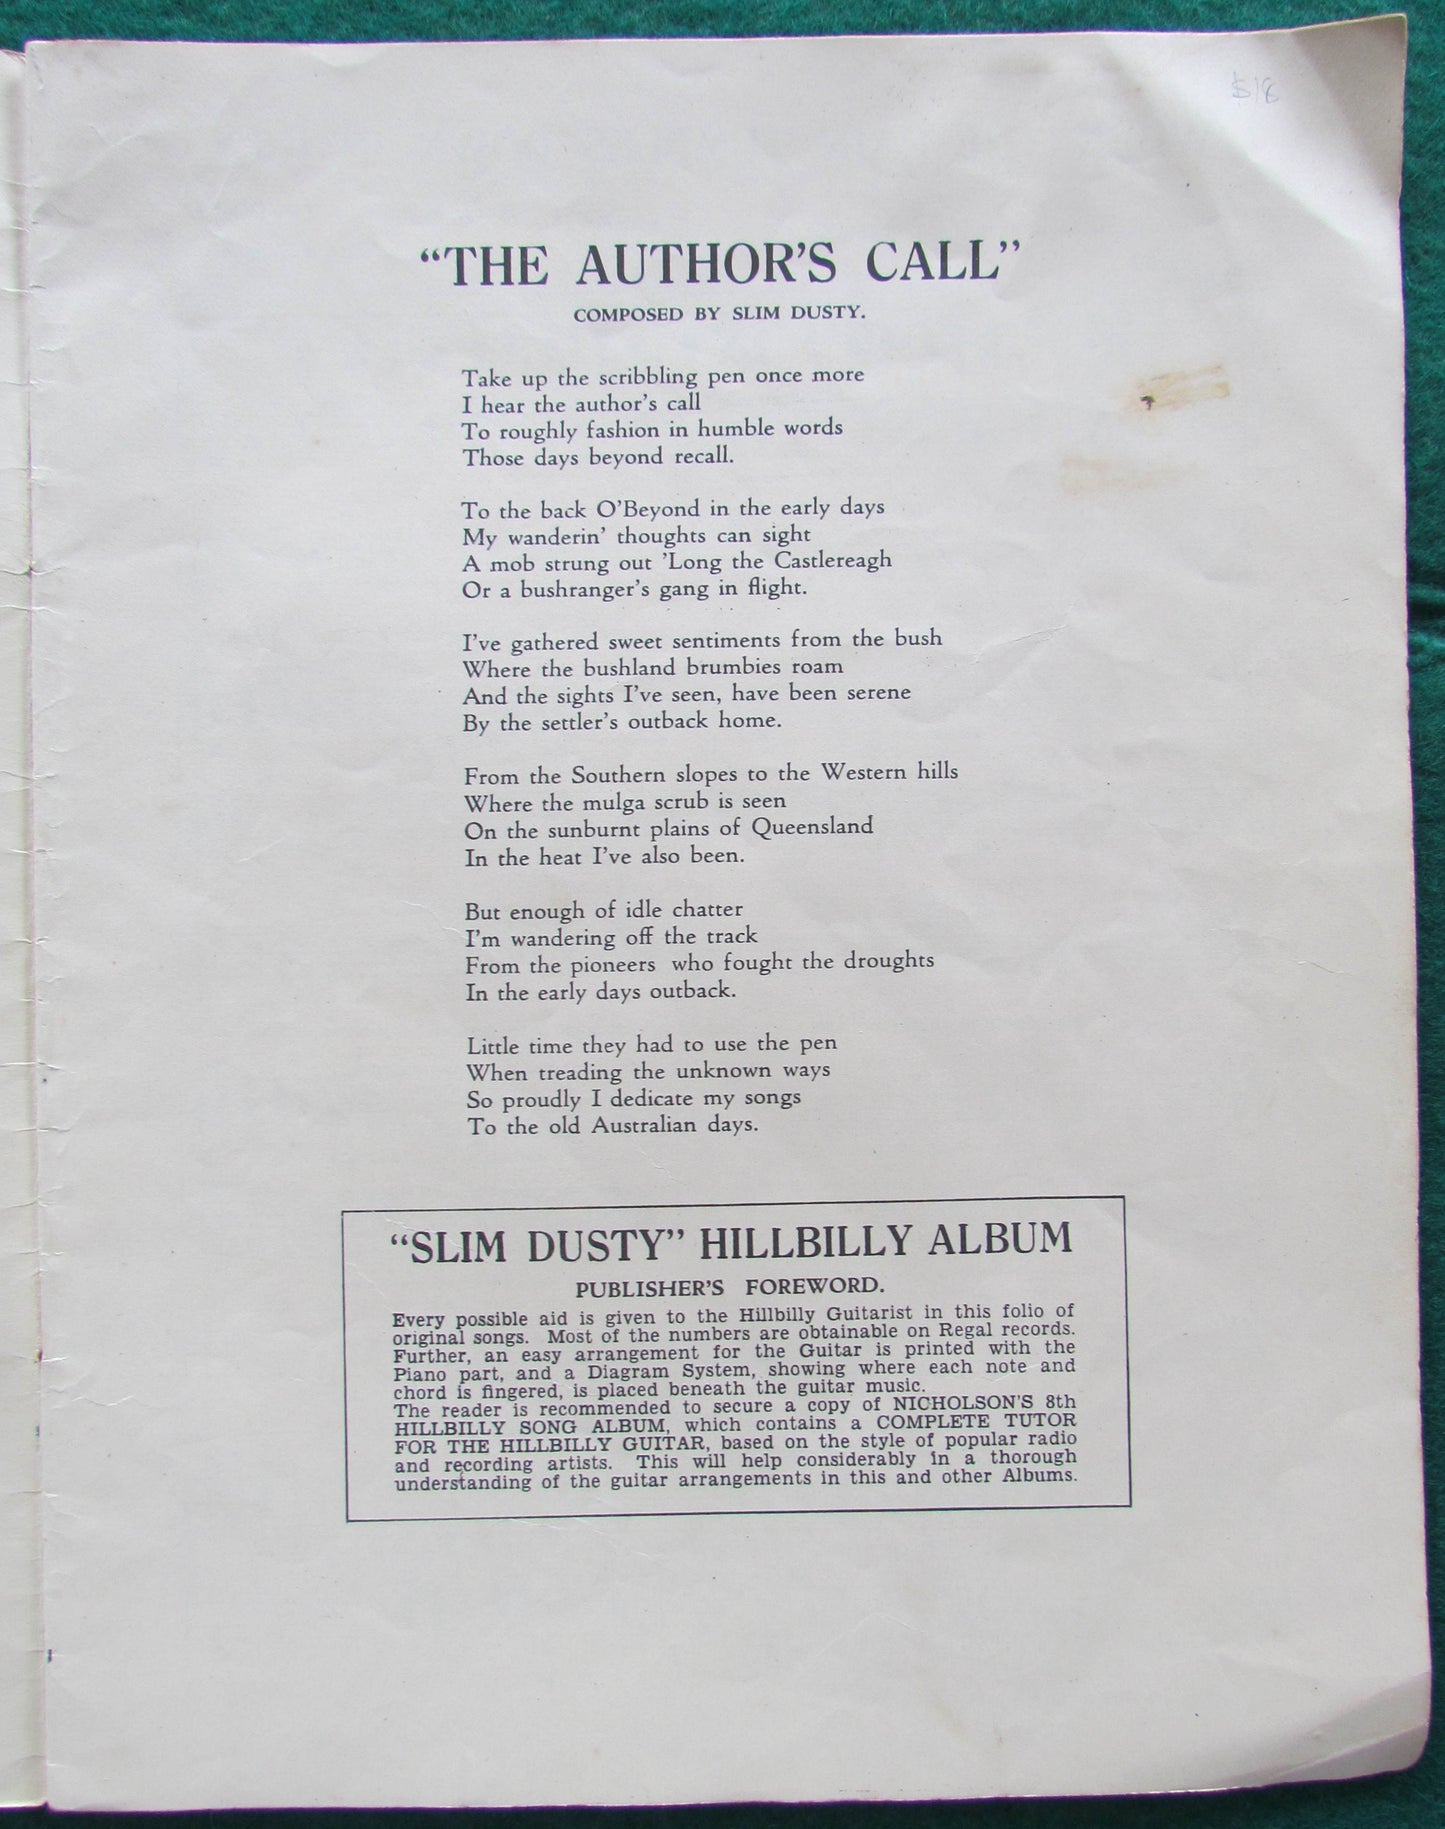 Nicholson's 9th Hillbilly Song Album Featuring Slim Dusty 1947